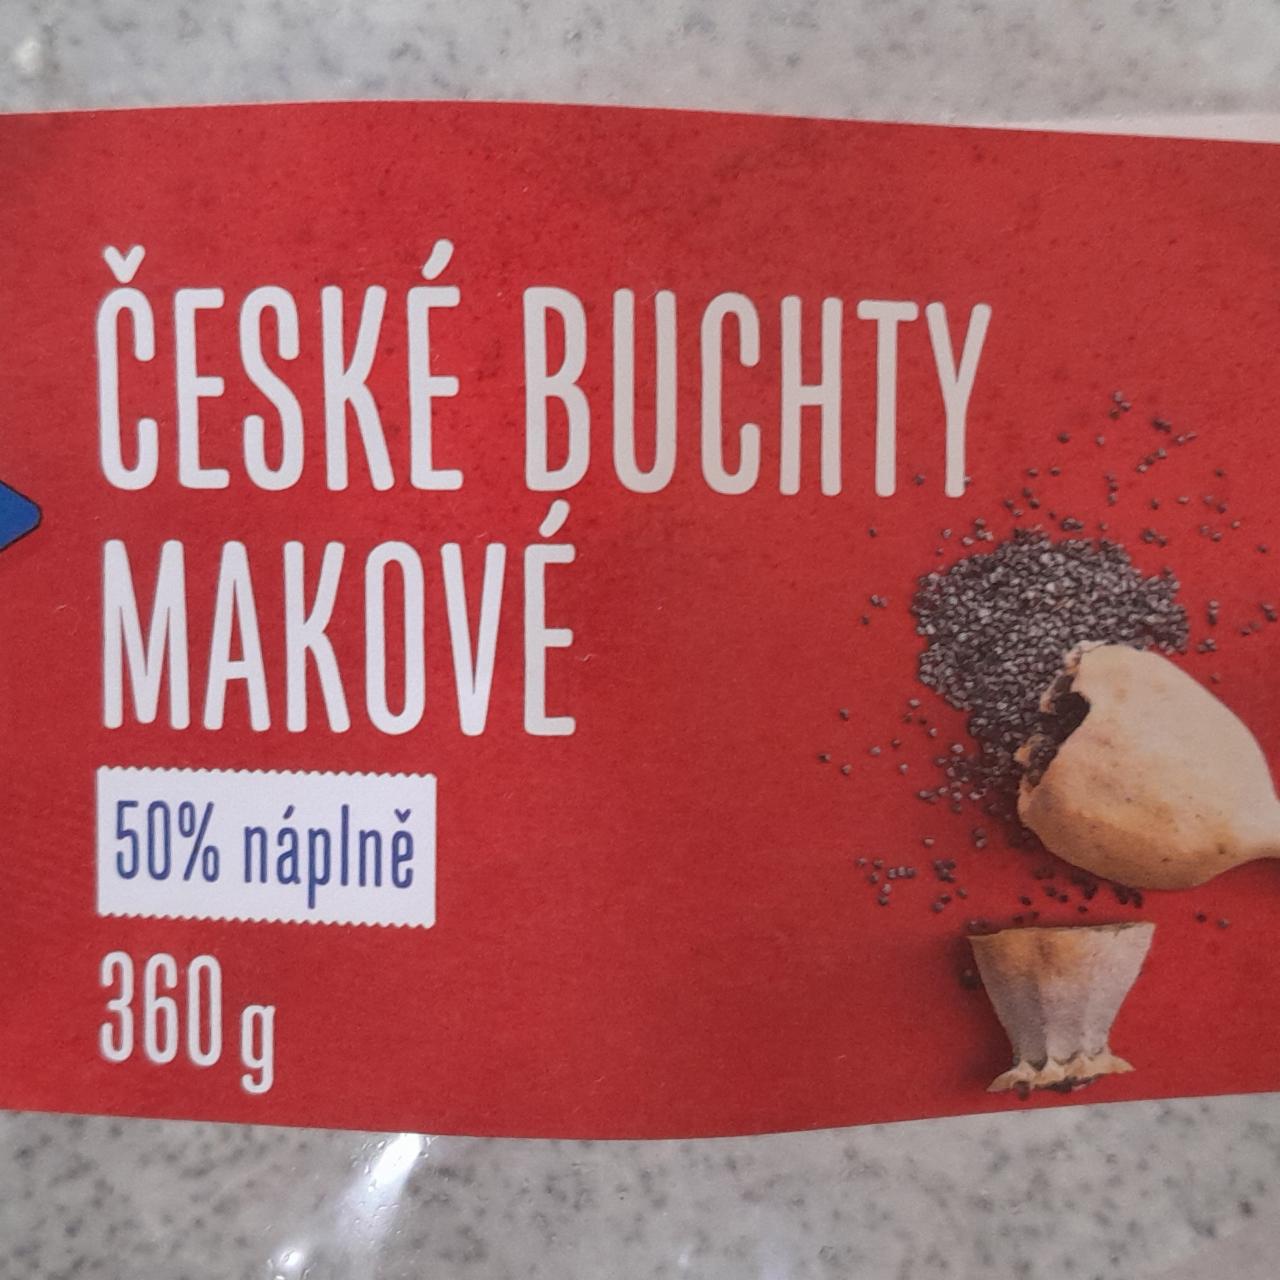 Fotografie - České buchty makové Náš kraj